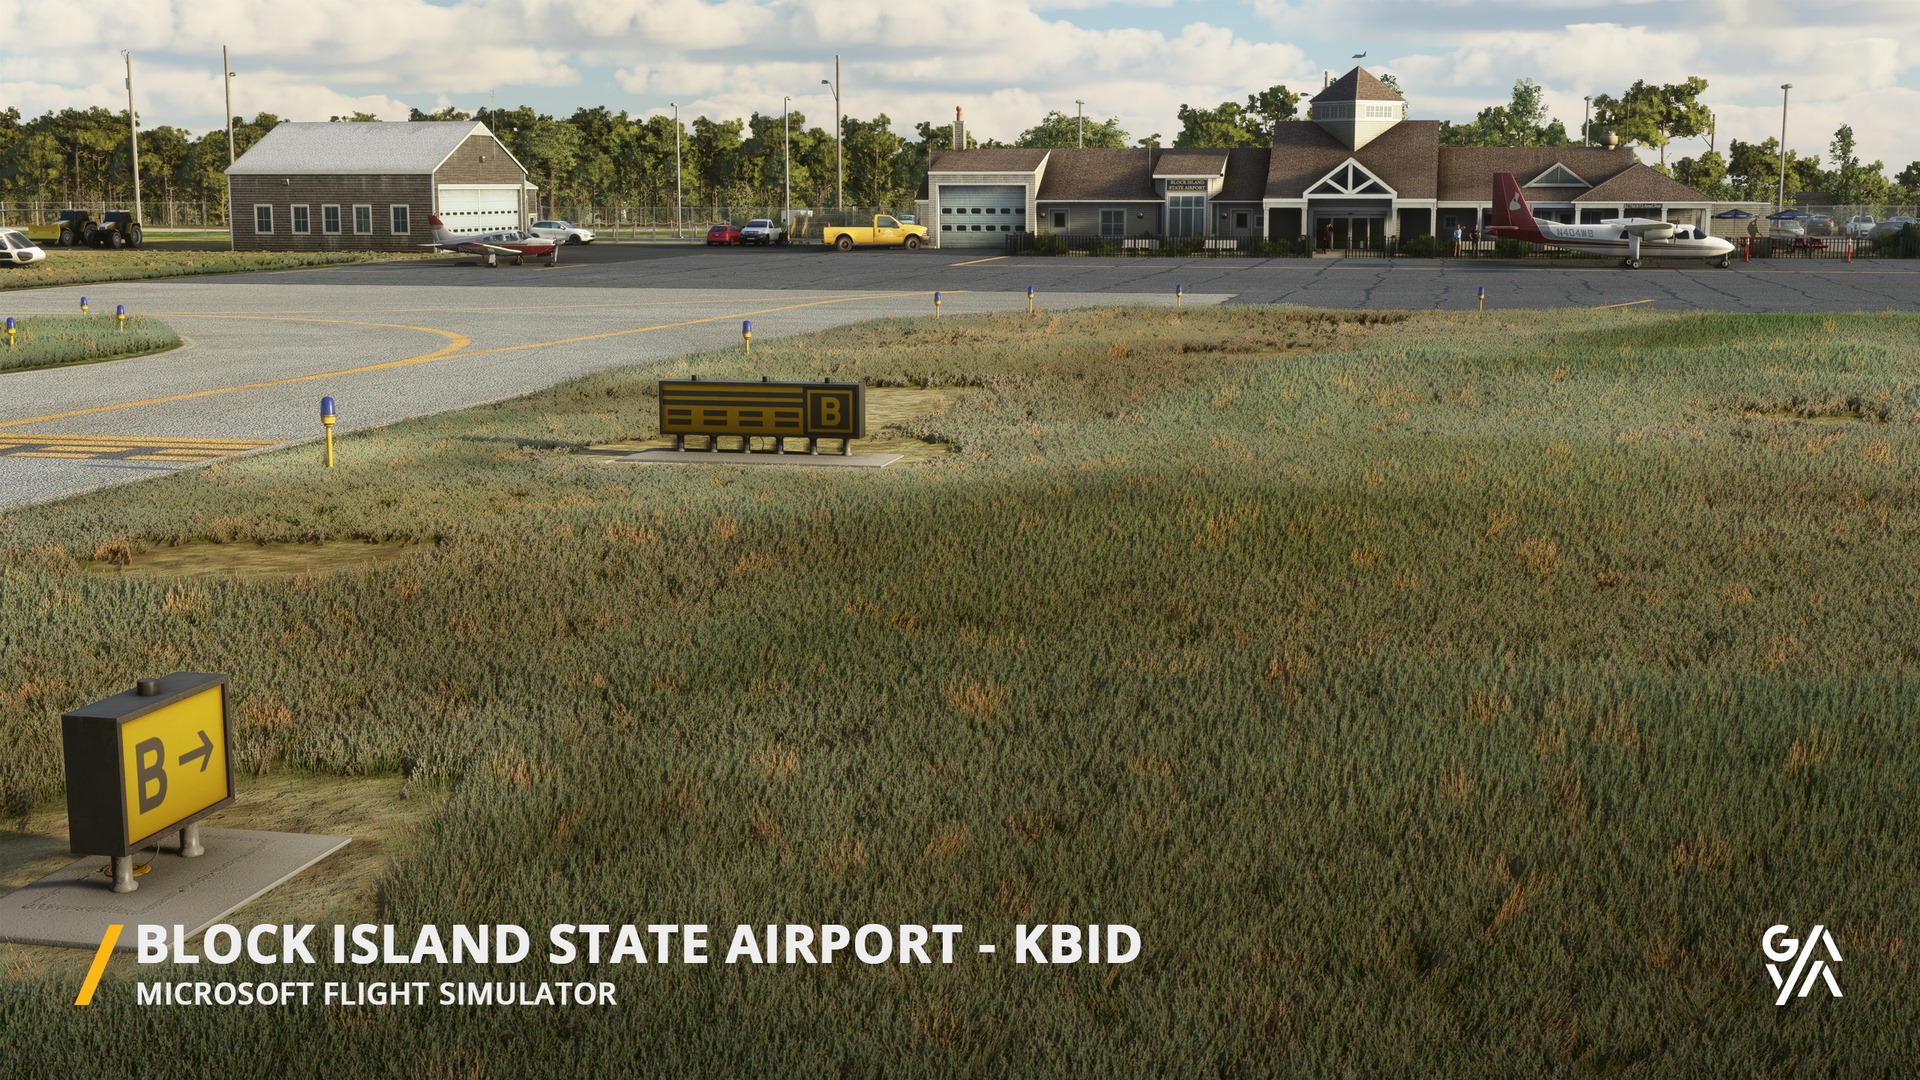 Gaya Simulations Announces Block Island State Airport for MSFS - Gaya Simulations